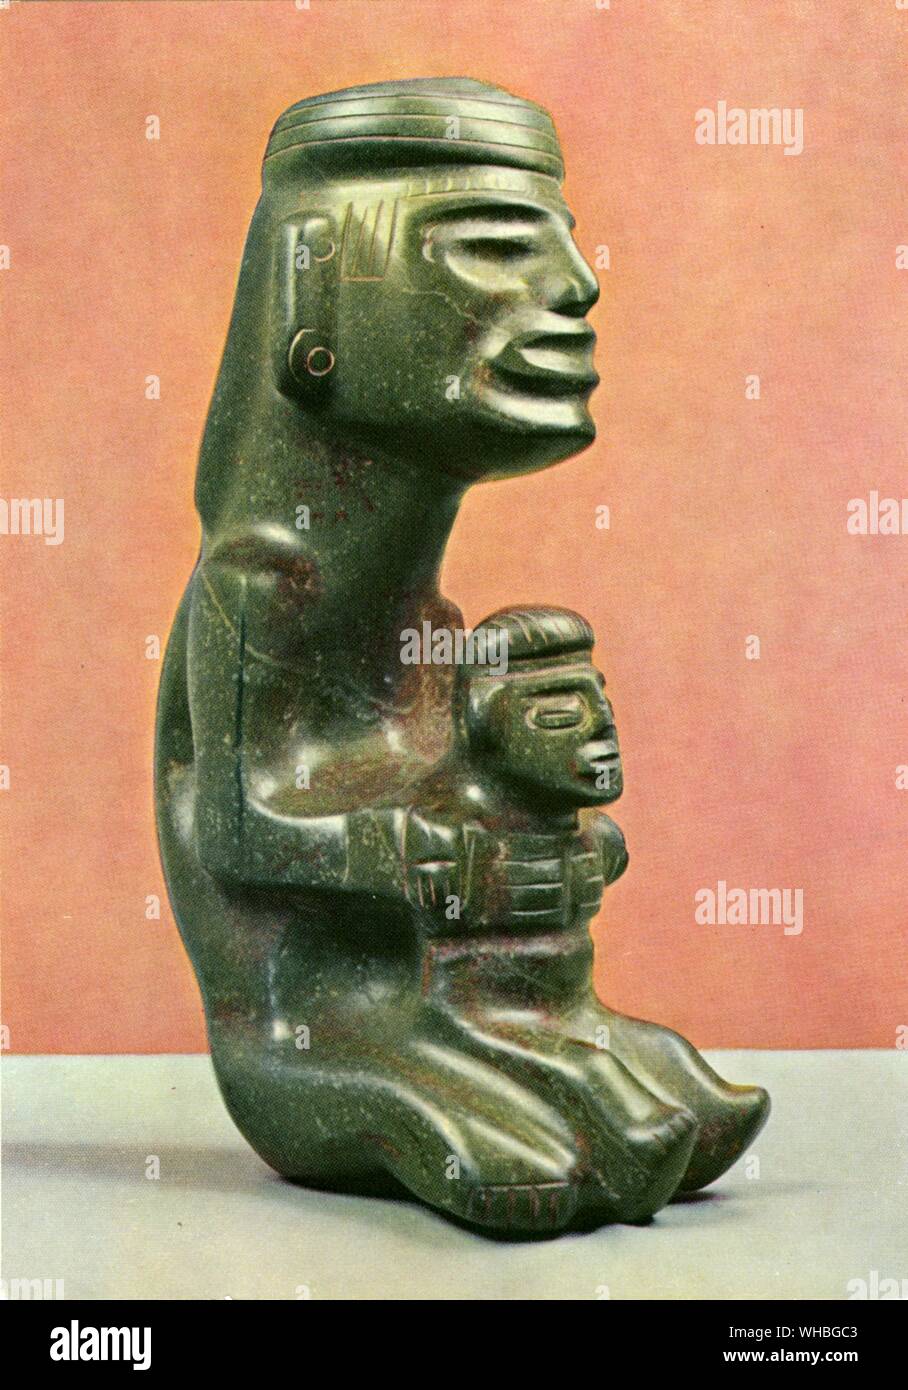 Steinplastik mutter mit genre : sculptures en pierre de la mère et l'enfant , Guerrero , Mexique . Classique et pré Olmèque probablement probablement trouvés dans l'actuelle région de Zapote Banque D'Images